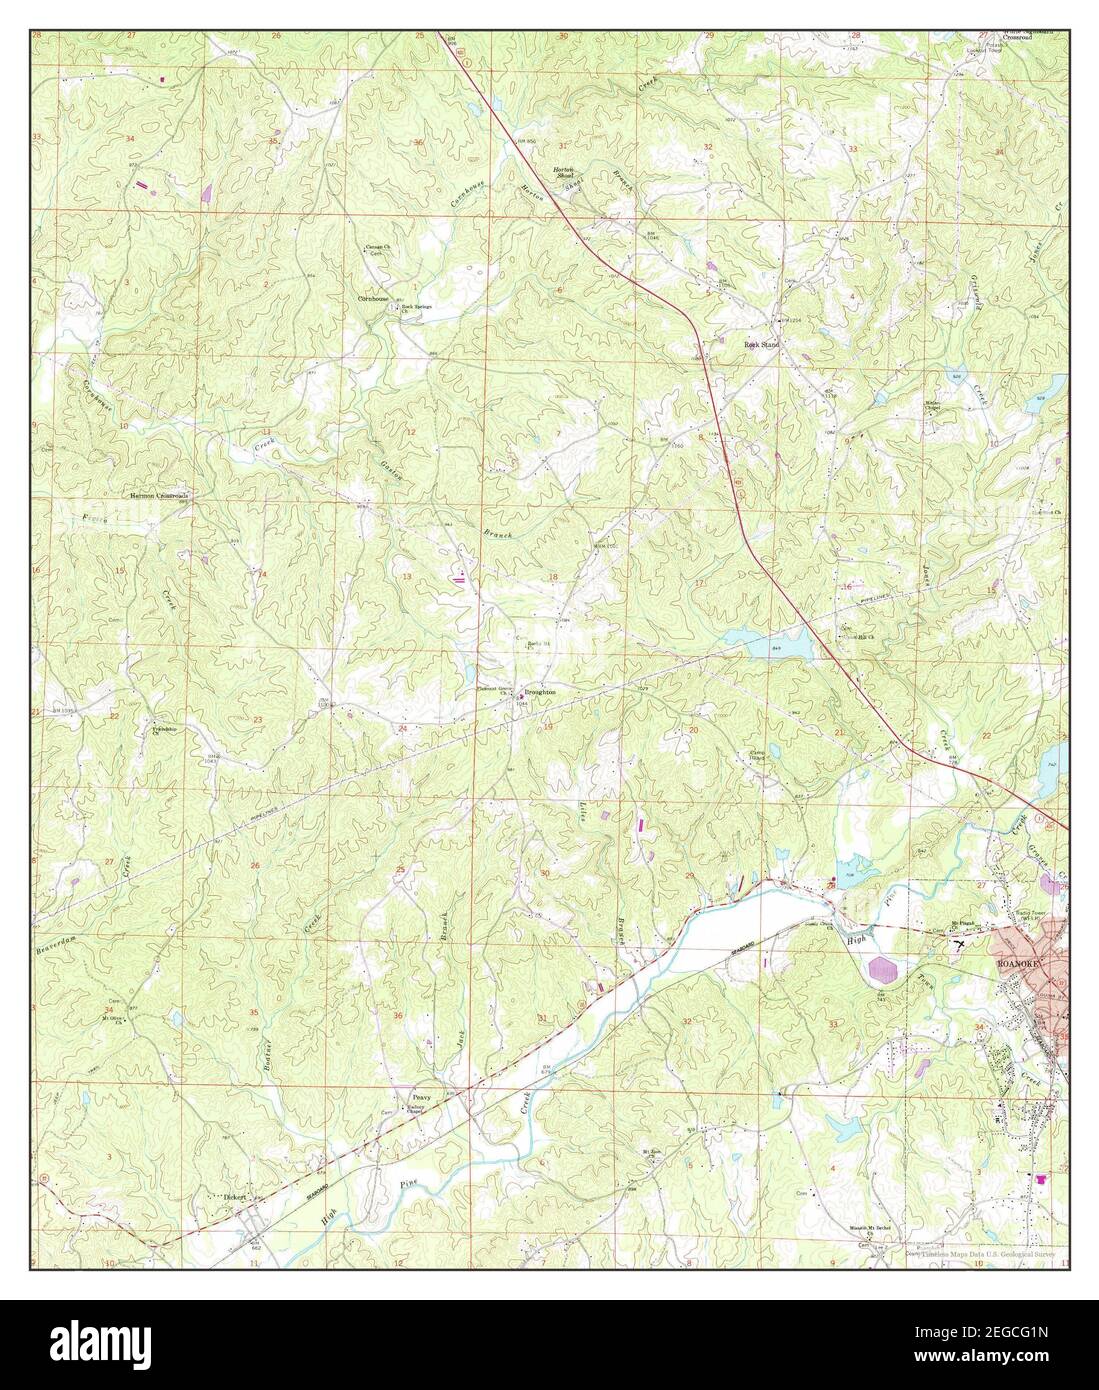 Roanoke West, Alabama, carte 1969, 1:24000, États-Unis d'Amérique par Timeless Maps, données U.S. Geological Survey Banque D'Images